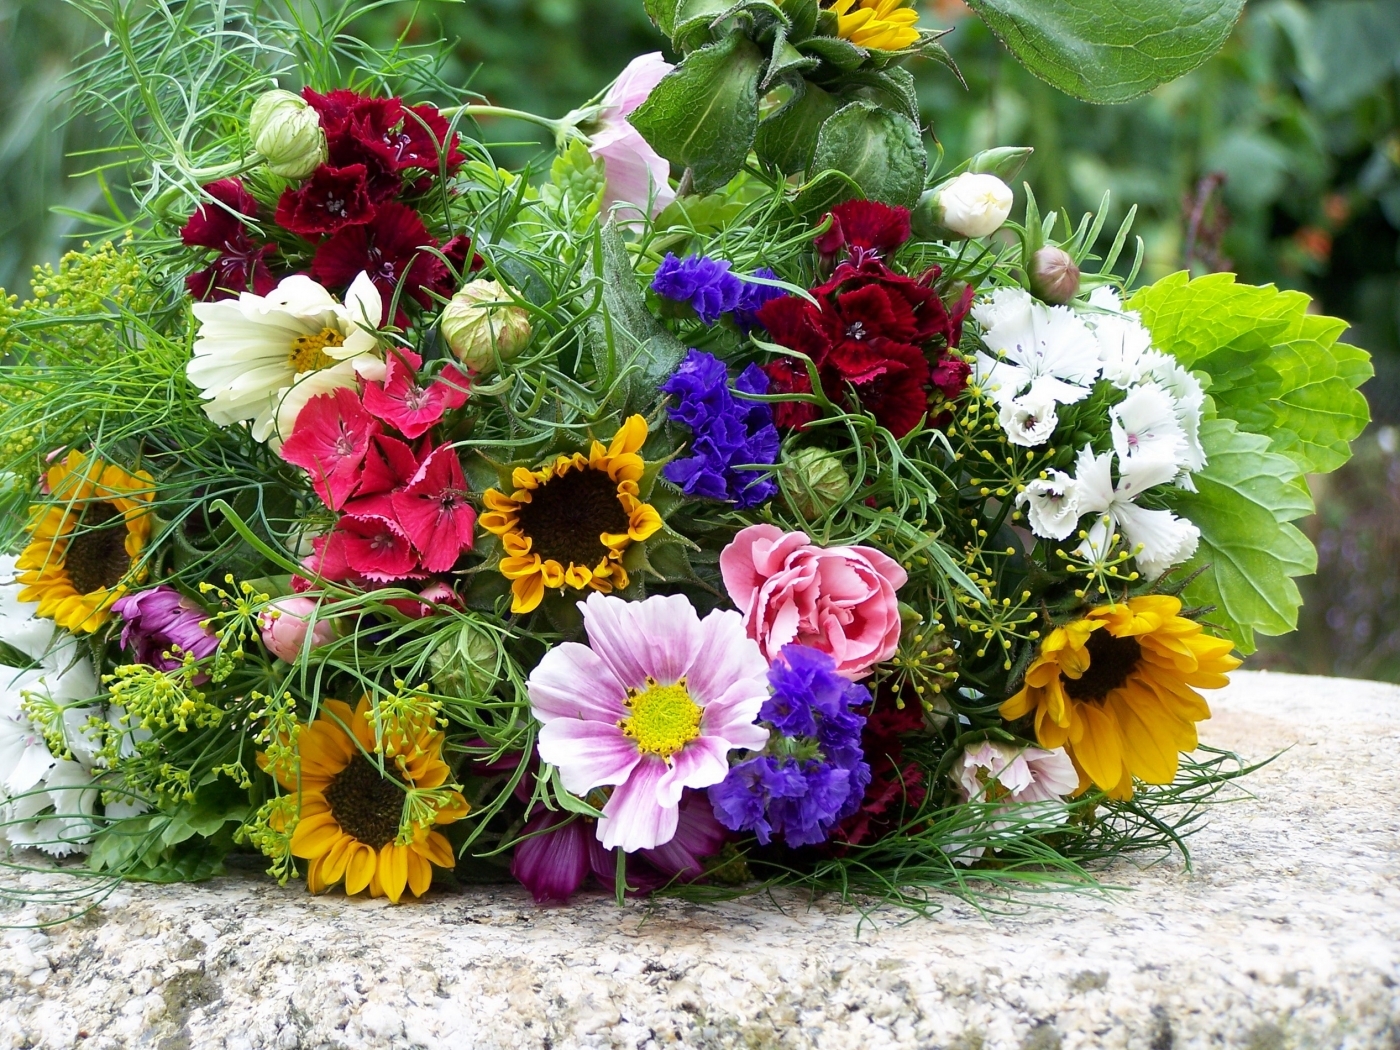 Скачать обои бесплатно Цветы, Букеты, Растения картинка на рабочий стол ПК